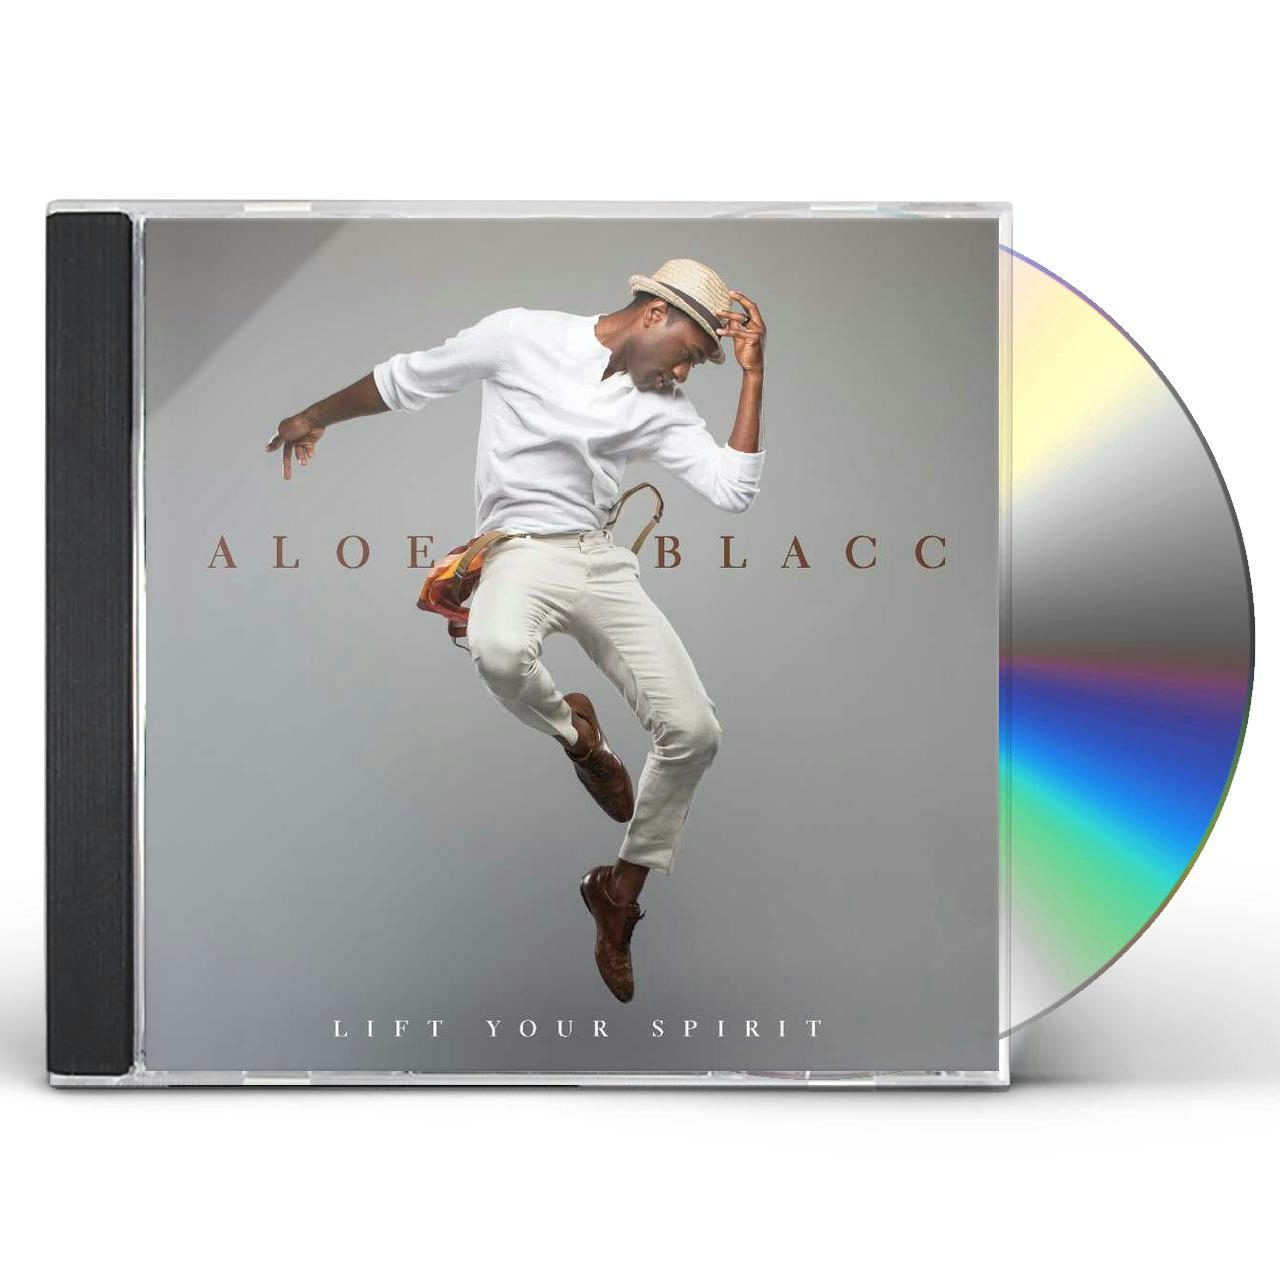 aloe blacc lift your spirit album download zip